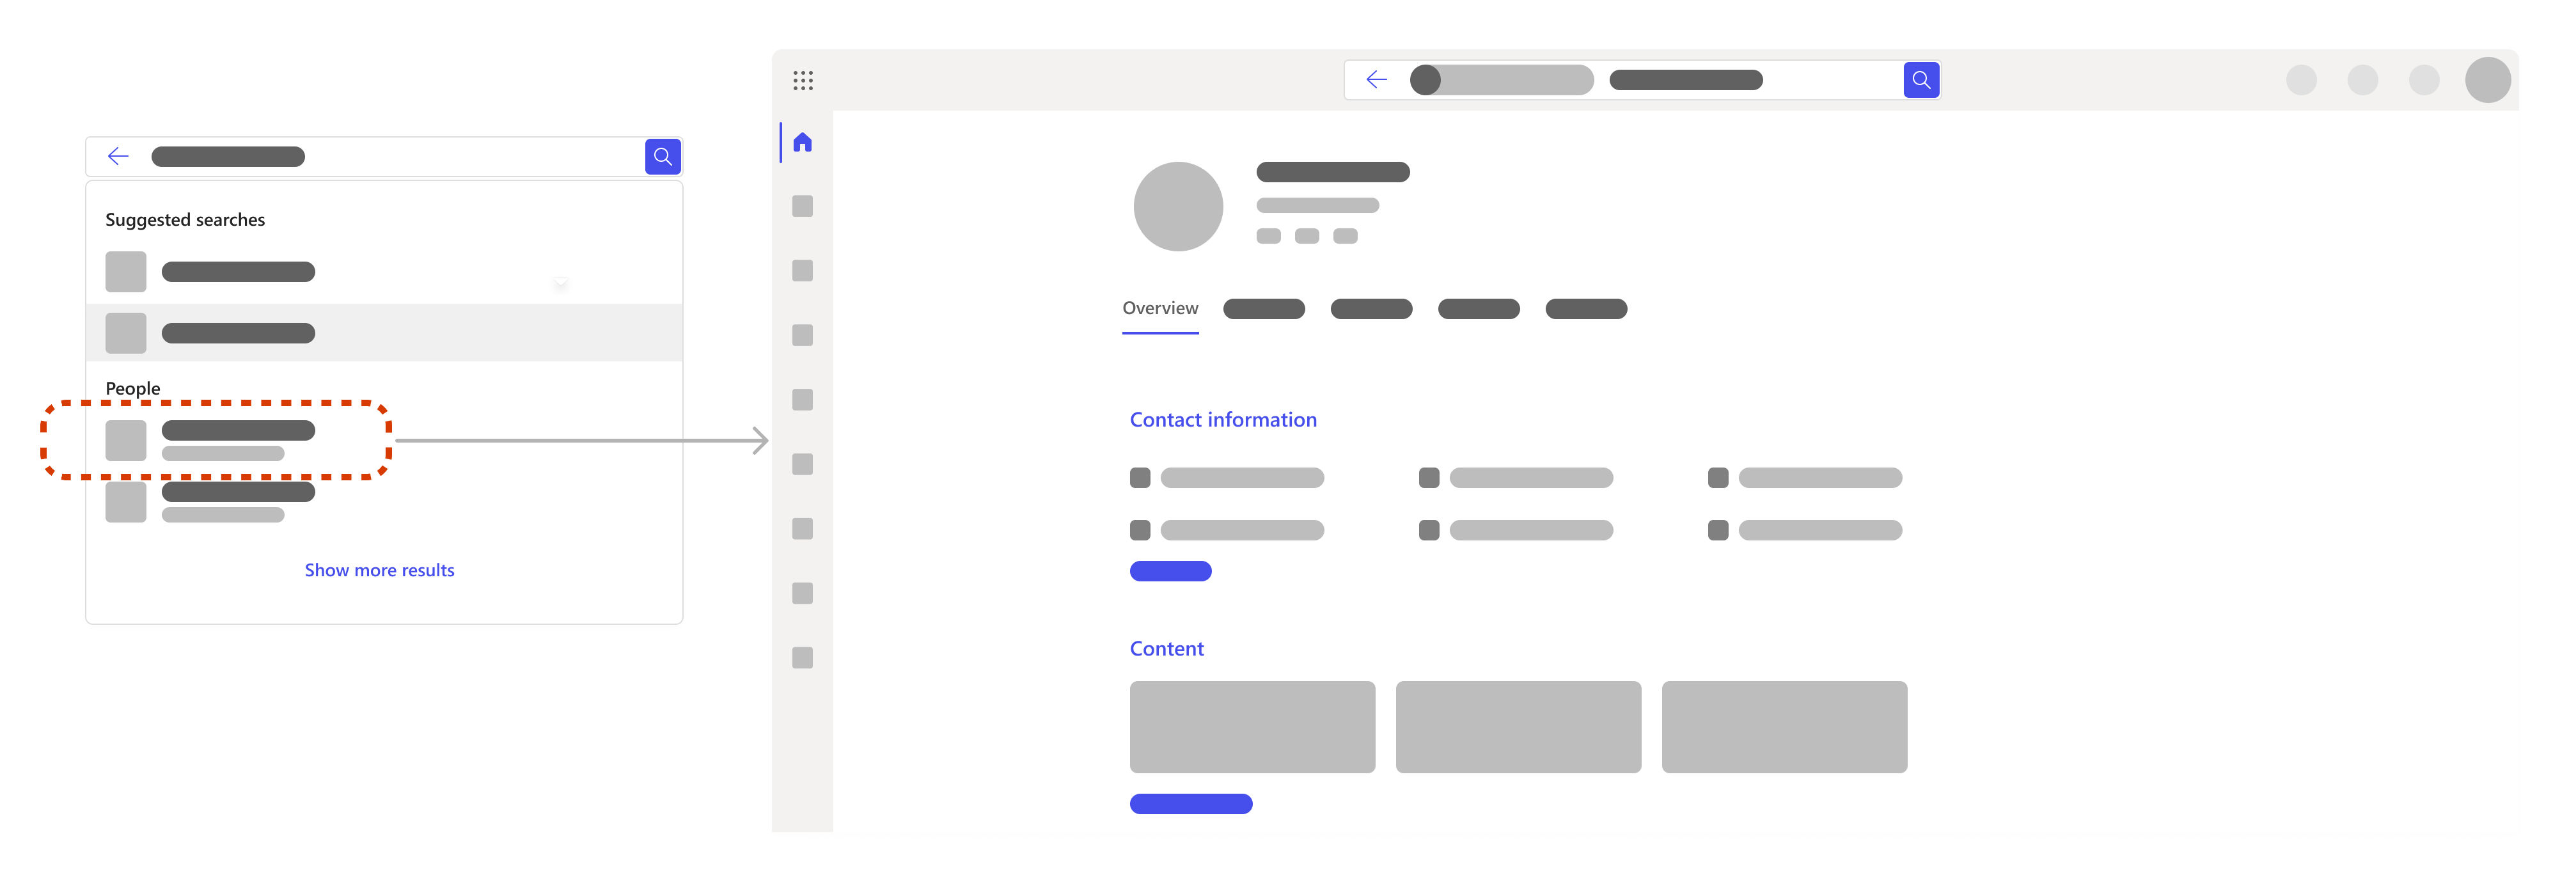 Flow, der zeigt, wie die Auswahl eines Suchergebnisses für eine Person die Profilseite einer Person öffnet.